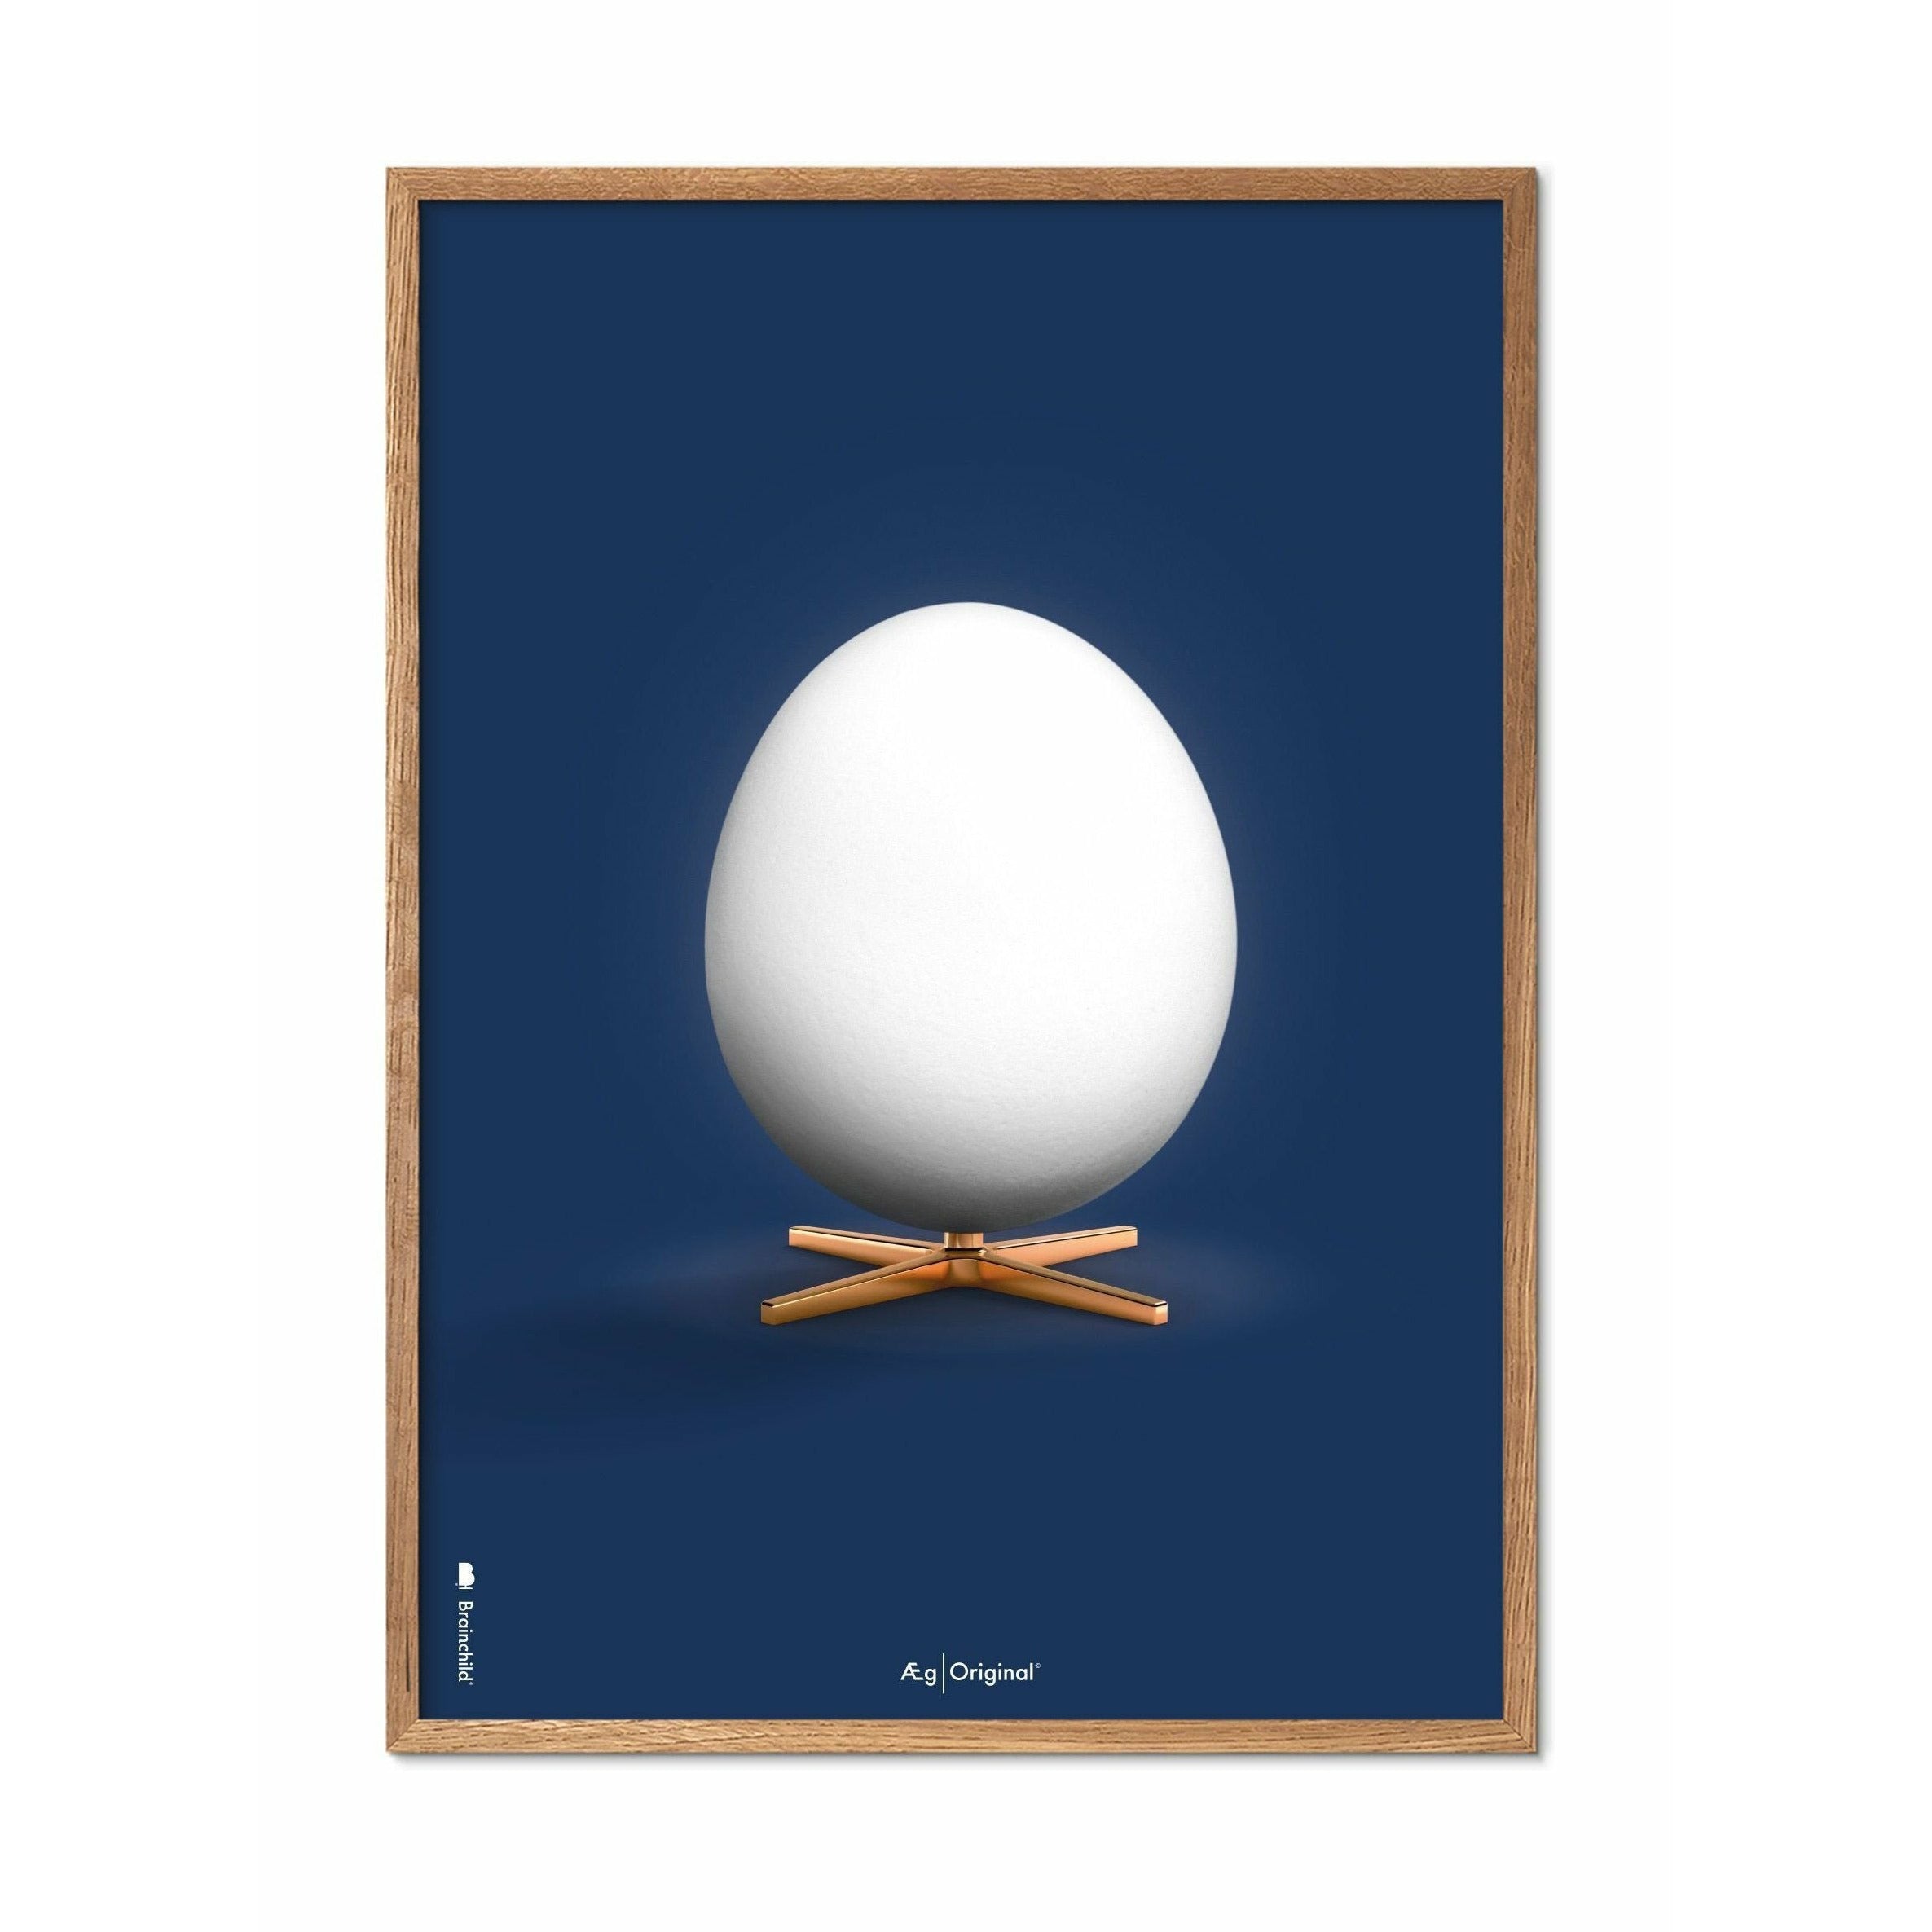 Póster clásico de huevo de creación, marco hecho de madera clara de 30x40 cm, fondo azul oscuro